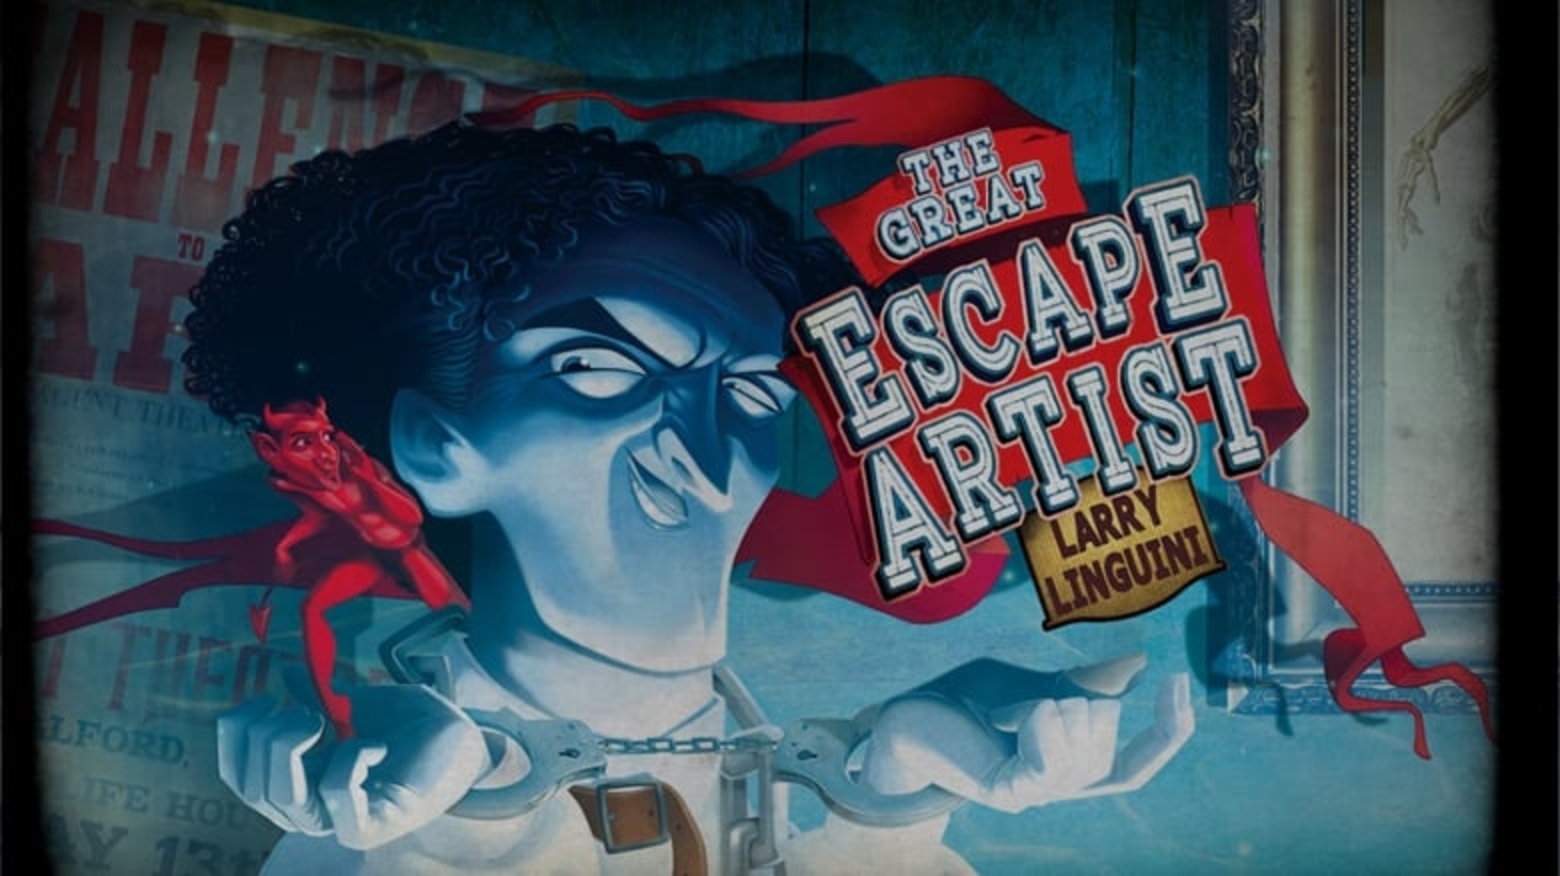 The Great Escape Artist